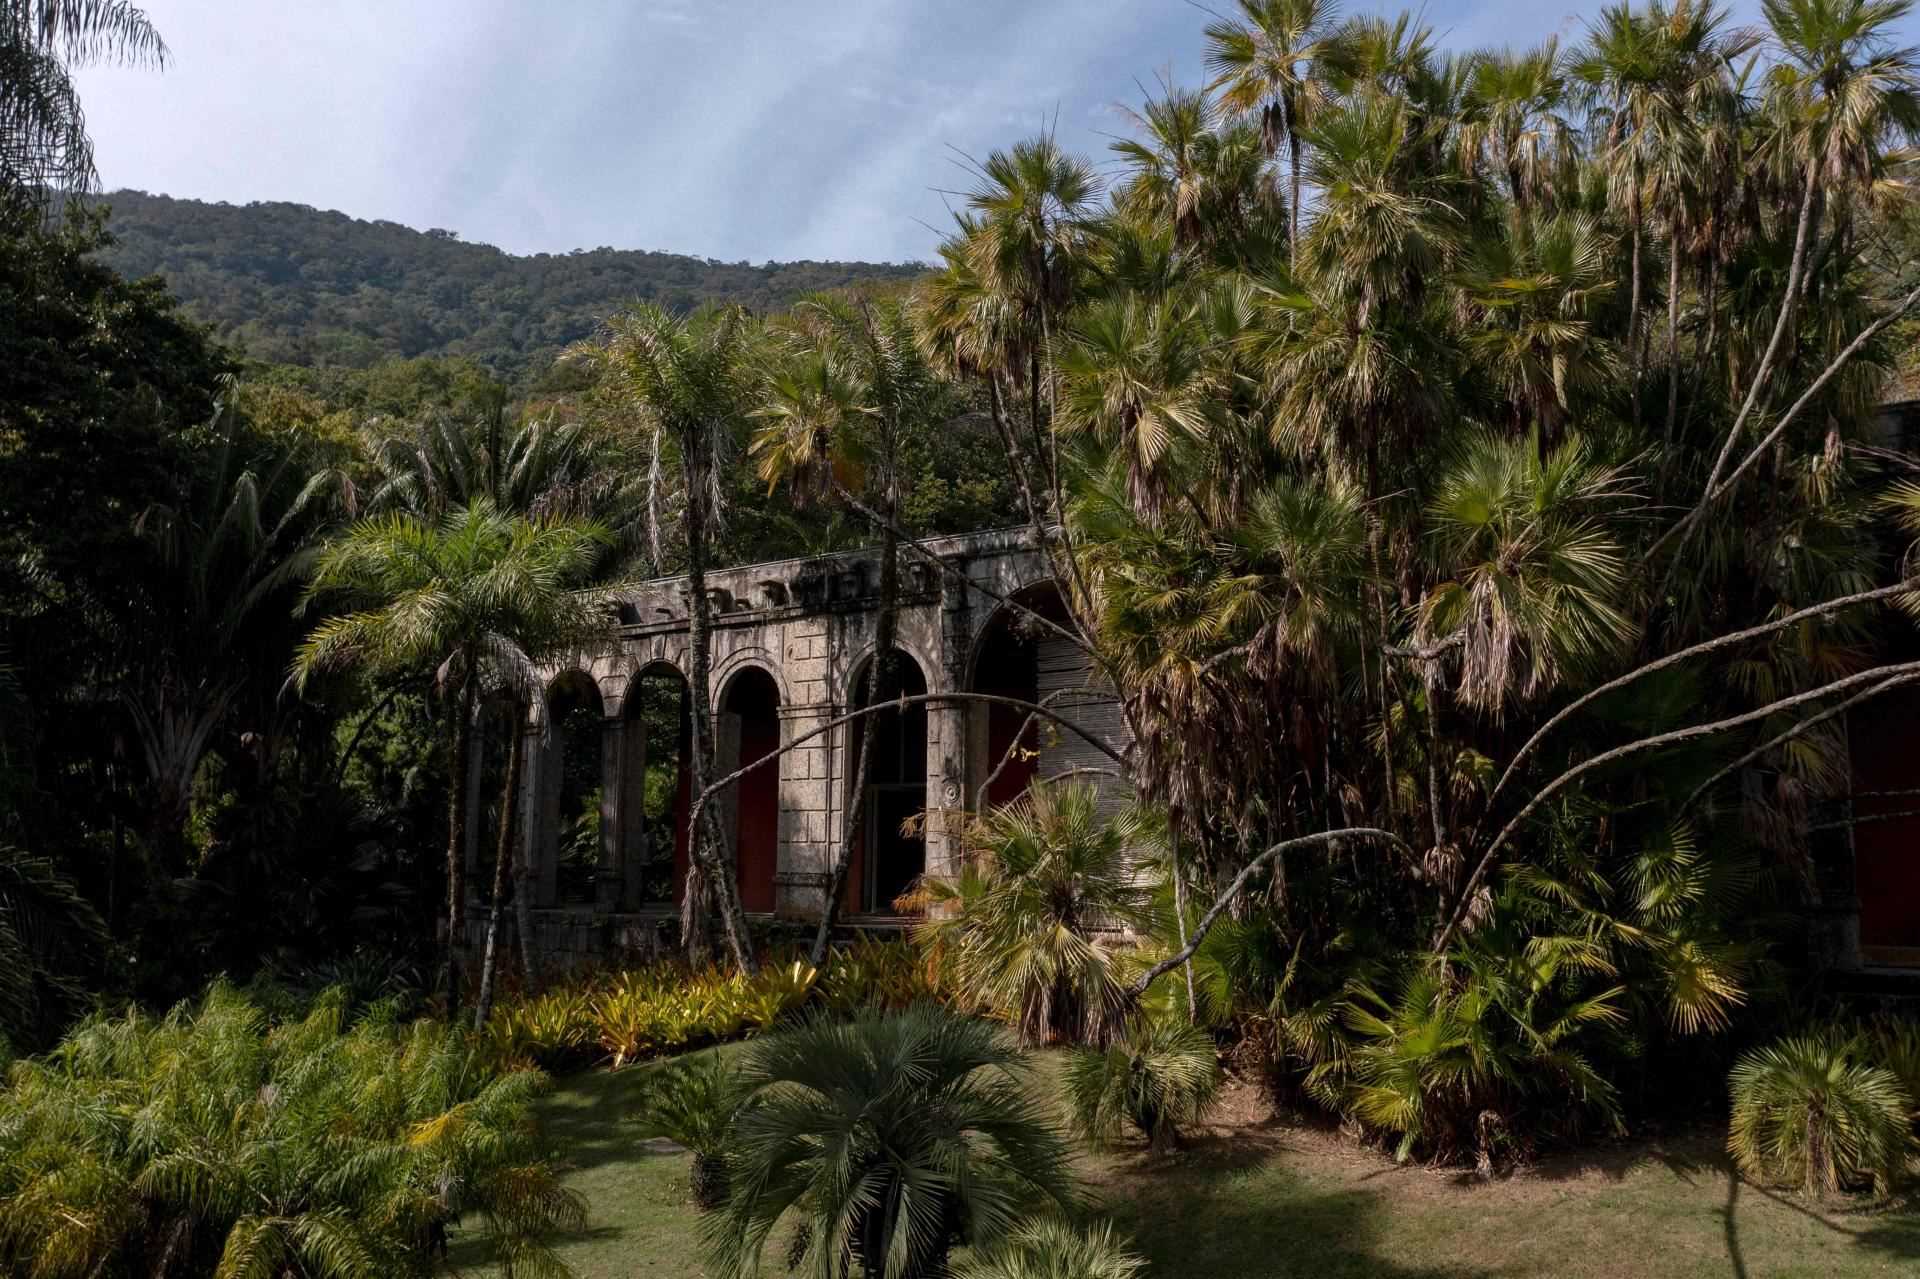 The home of Brazilian landscape architect Roberto Burle Marx, in Rio de Janeiro, Brazil.